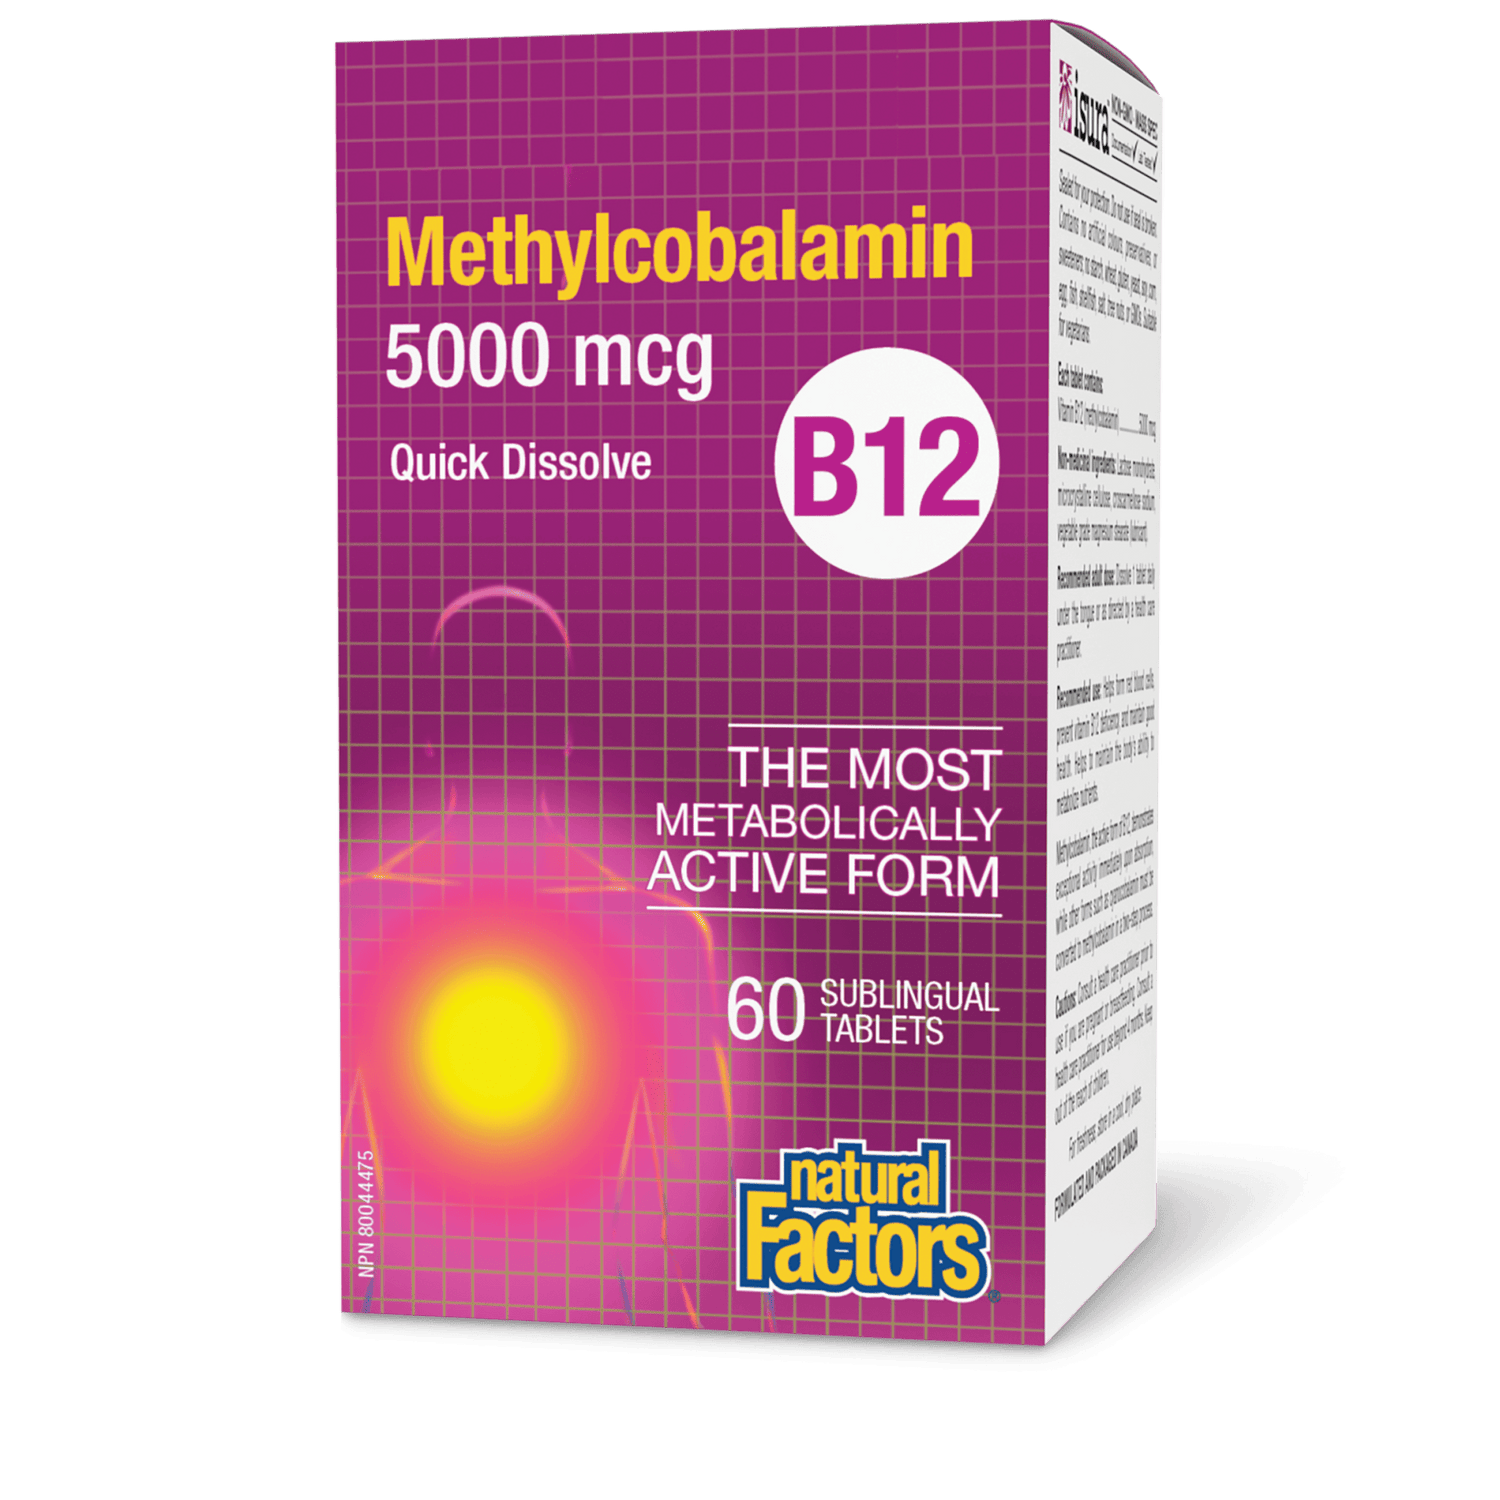 B12 Methylcobalamin 5000 mcg, Natural Factors|v|image|1247